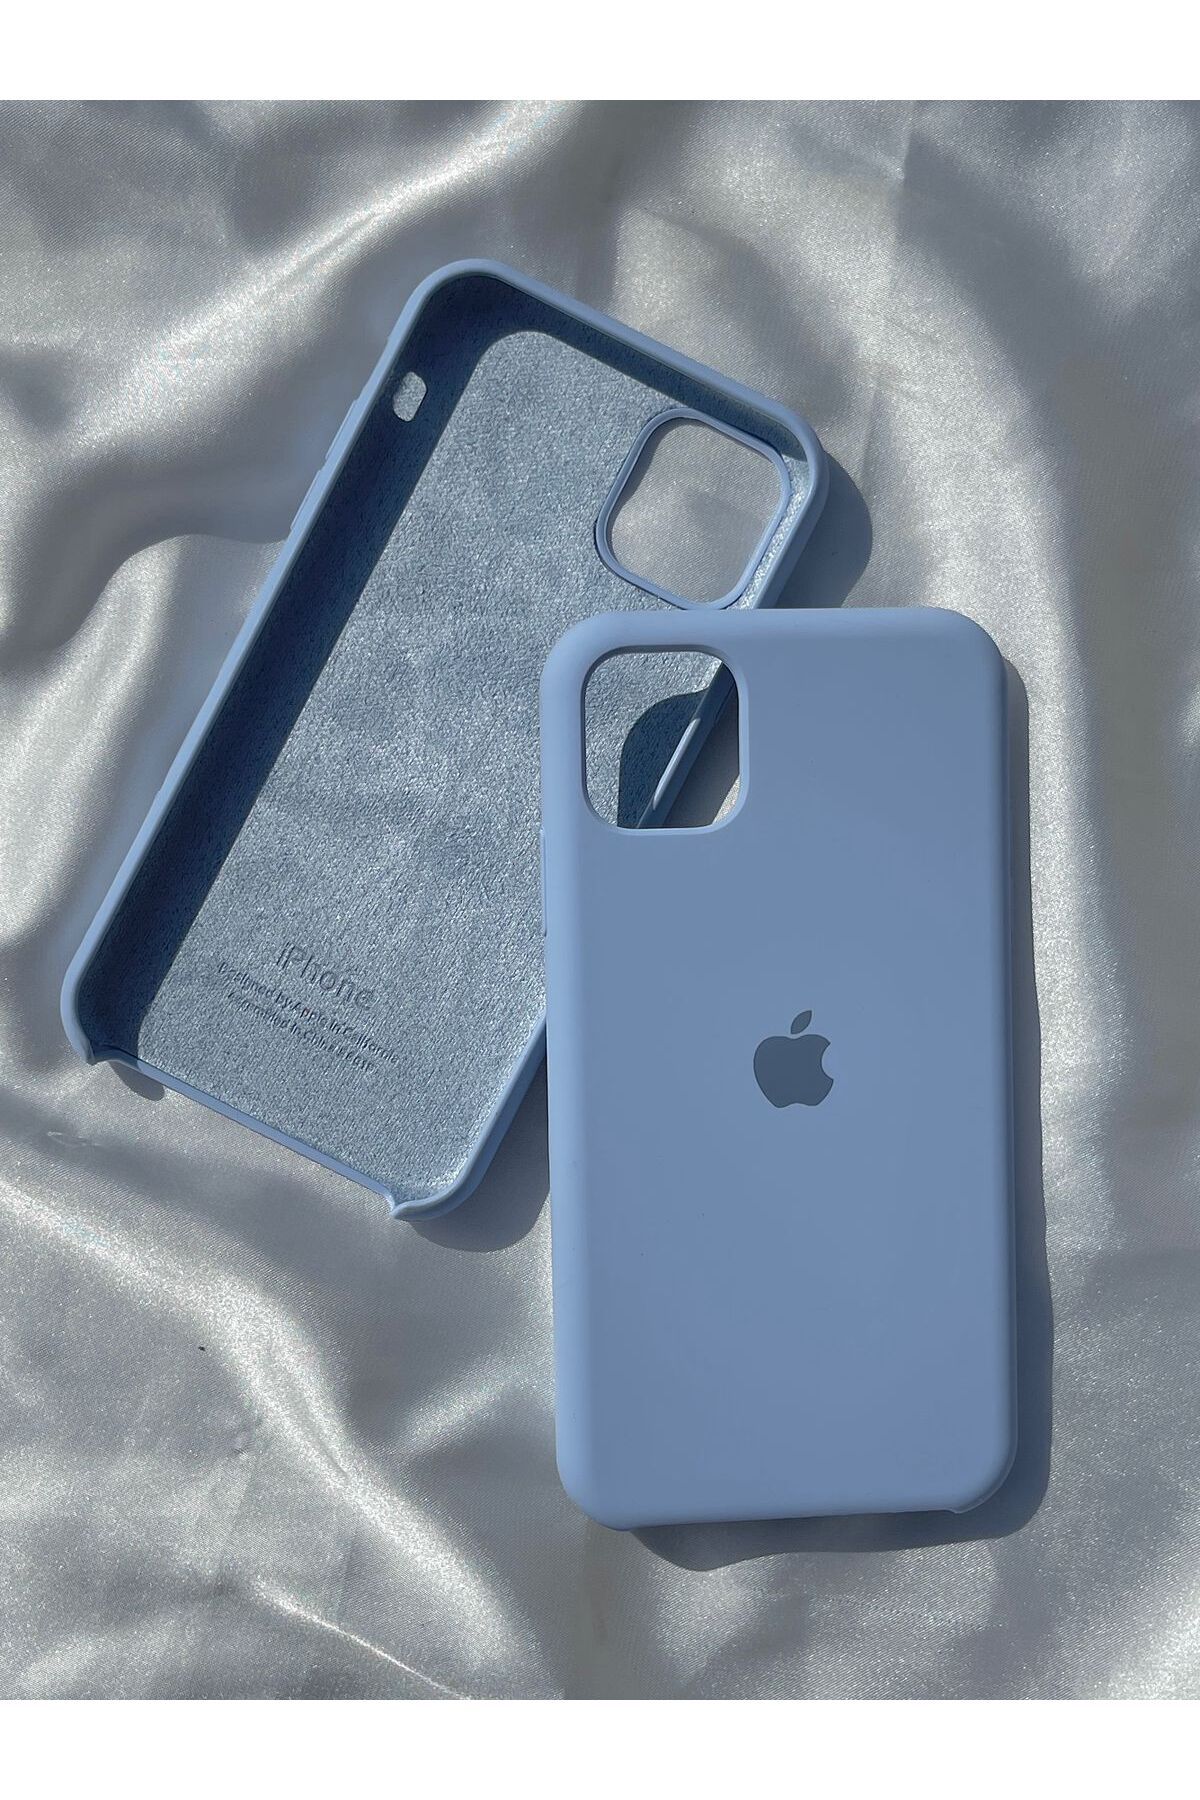 ALCİNOUS Iphone 11 Uyumlu Lansman Premium Kalite Kılıf - Bebe Mavisi